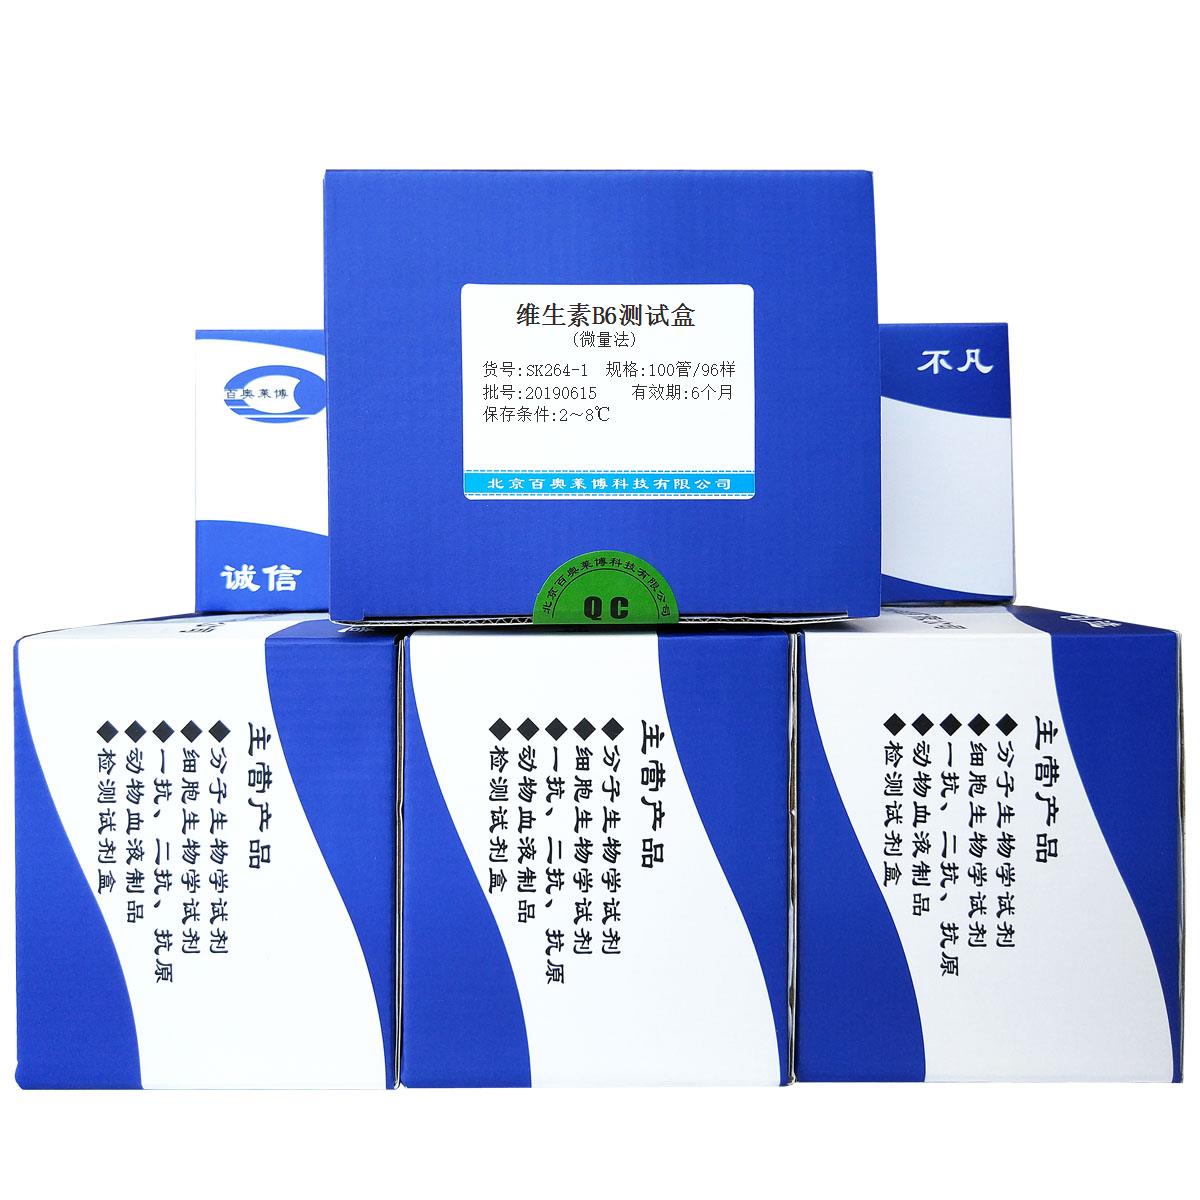 维生素B6测试盒(微量法)北京厂家